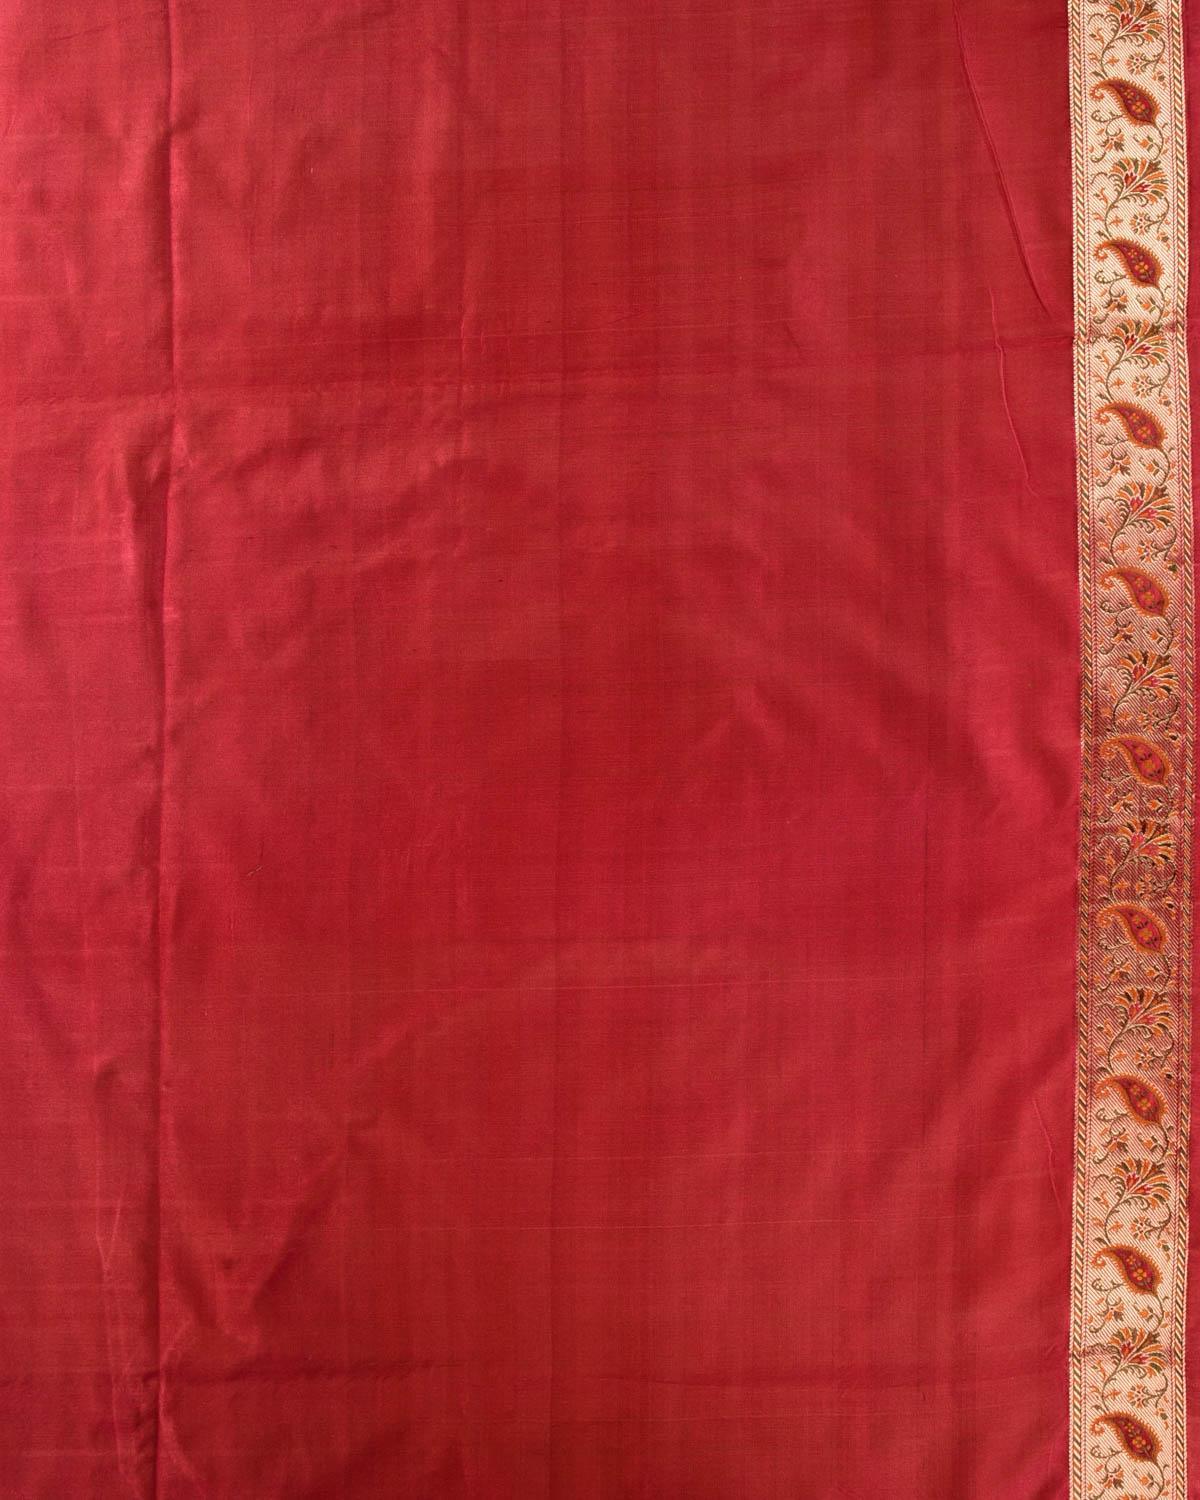 Barn Red Banarasi Gharchola Jamawar  Handwoven Katan Silk Saree - By HolyWeaves, Benares